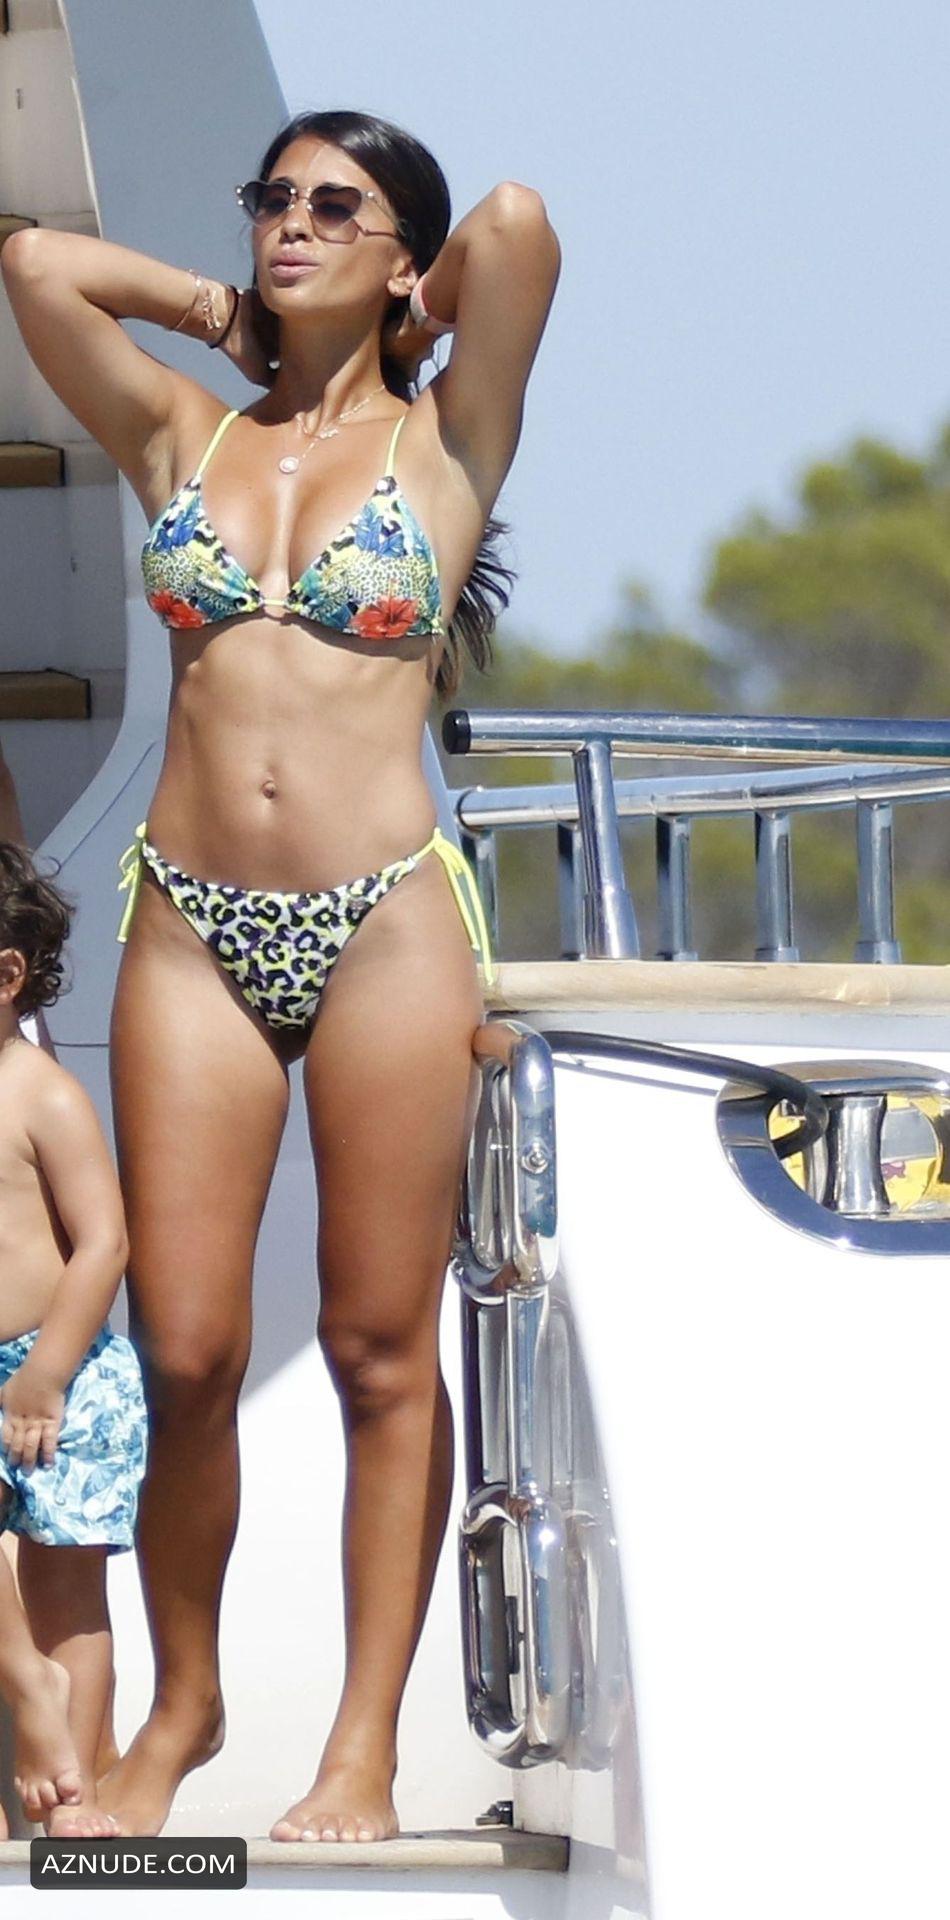 Antonela Roccuzzo And Lionel Messi On Board A Mega Yacht In Ibiza Aznude